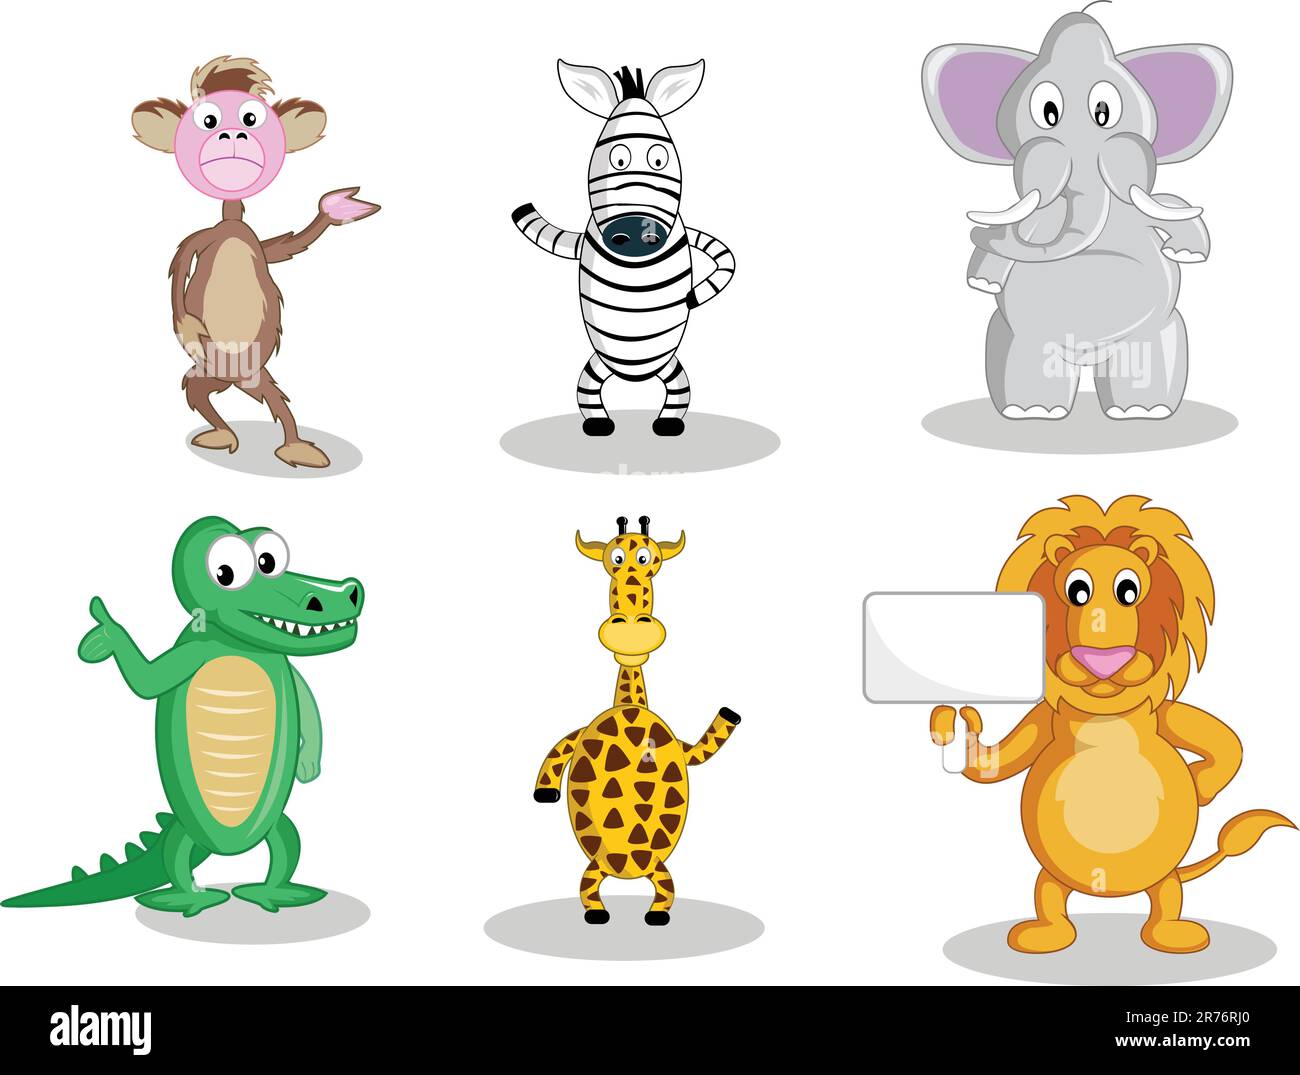 Ein Affe und ein Zebra winken ihre Hand, ein fetter Elefant, lächelnder intelligenter Alligator, winkende Giraffen und ein Löwe mit einem Schild, alles in Vektor-Illustra... Stock Vektor